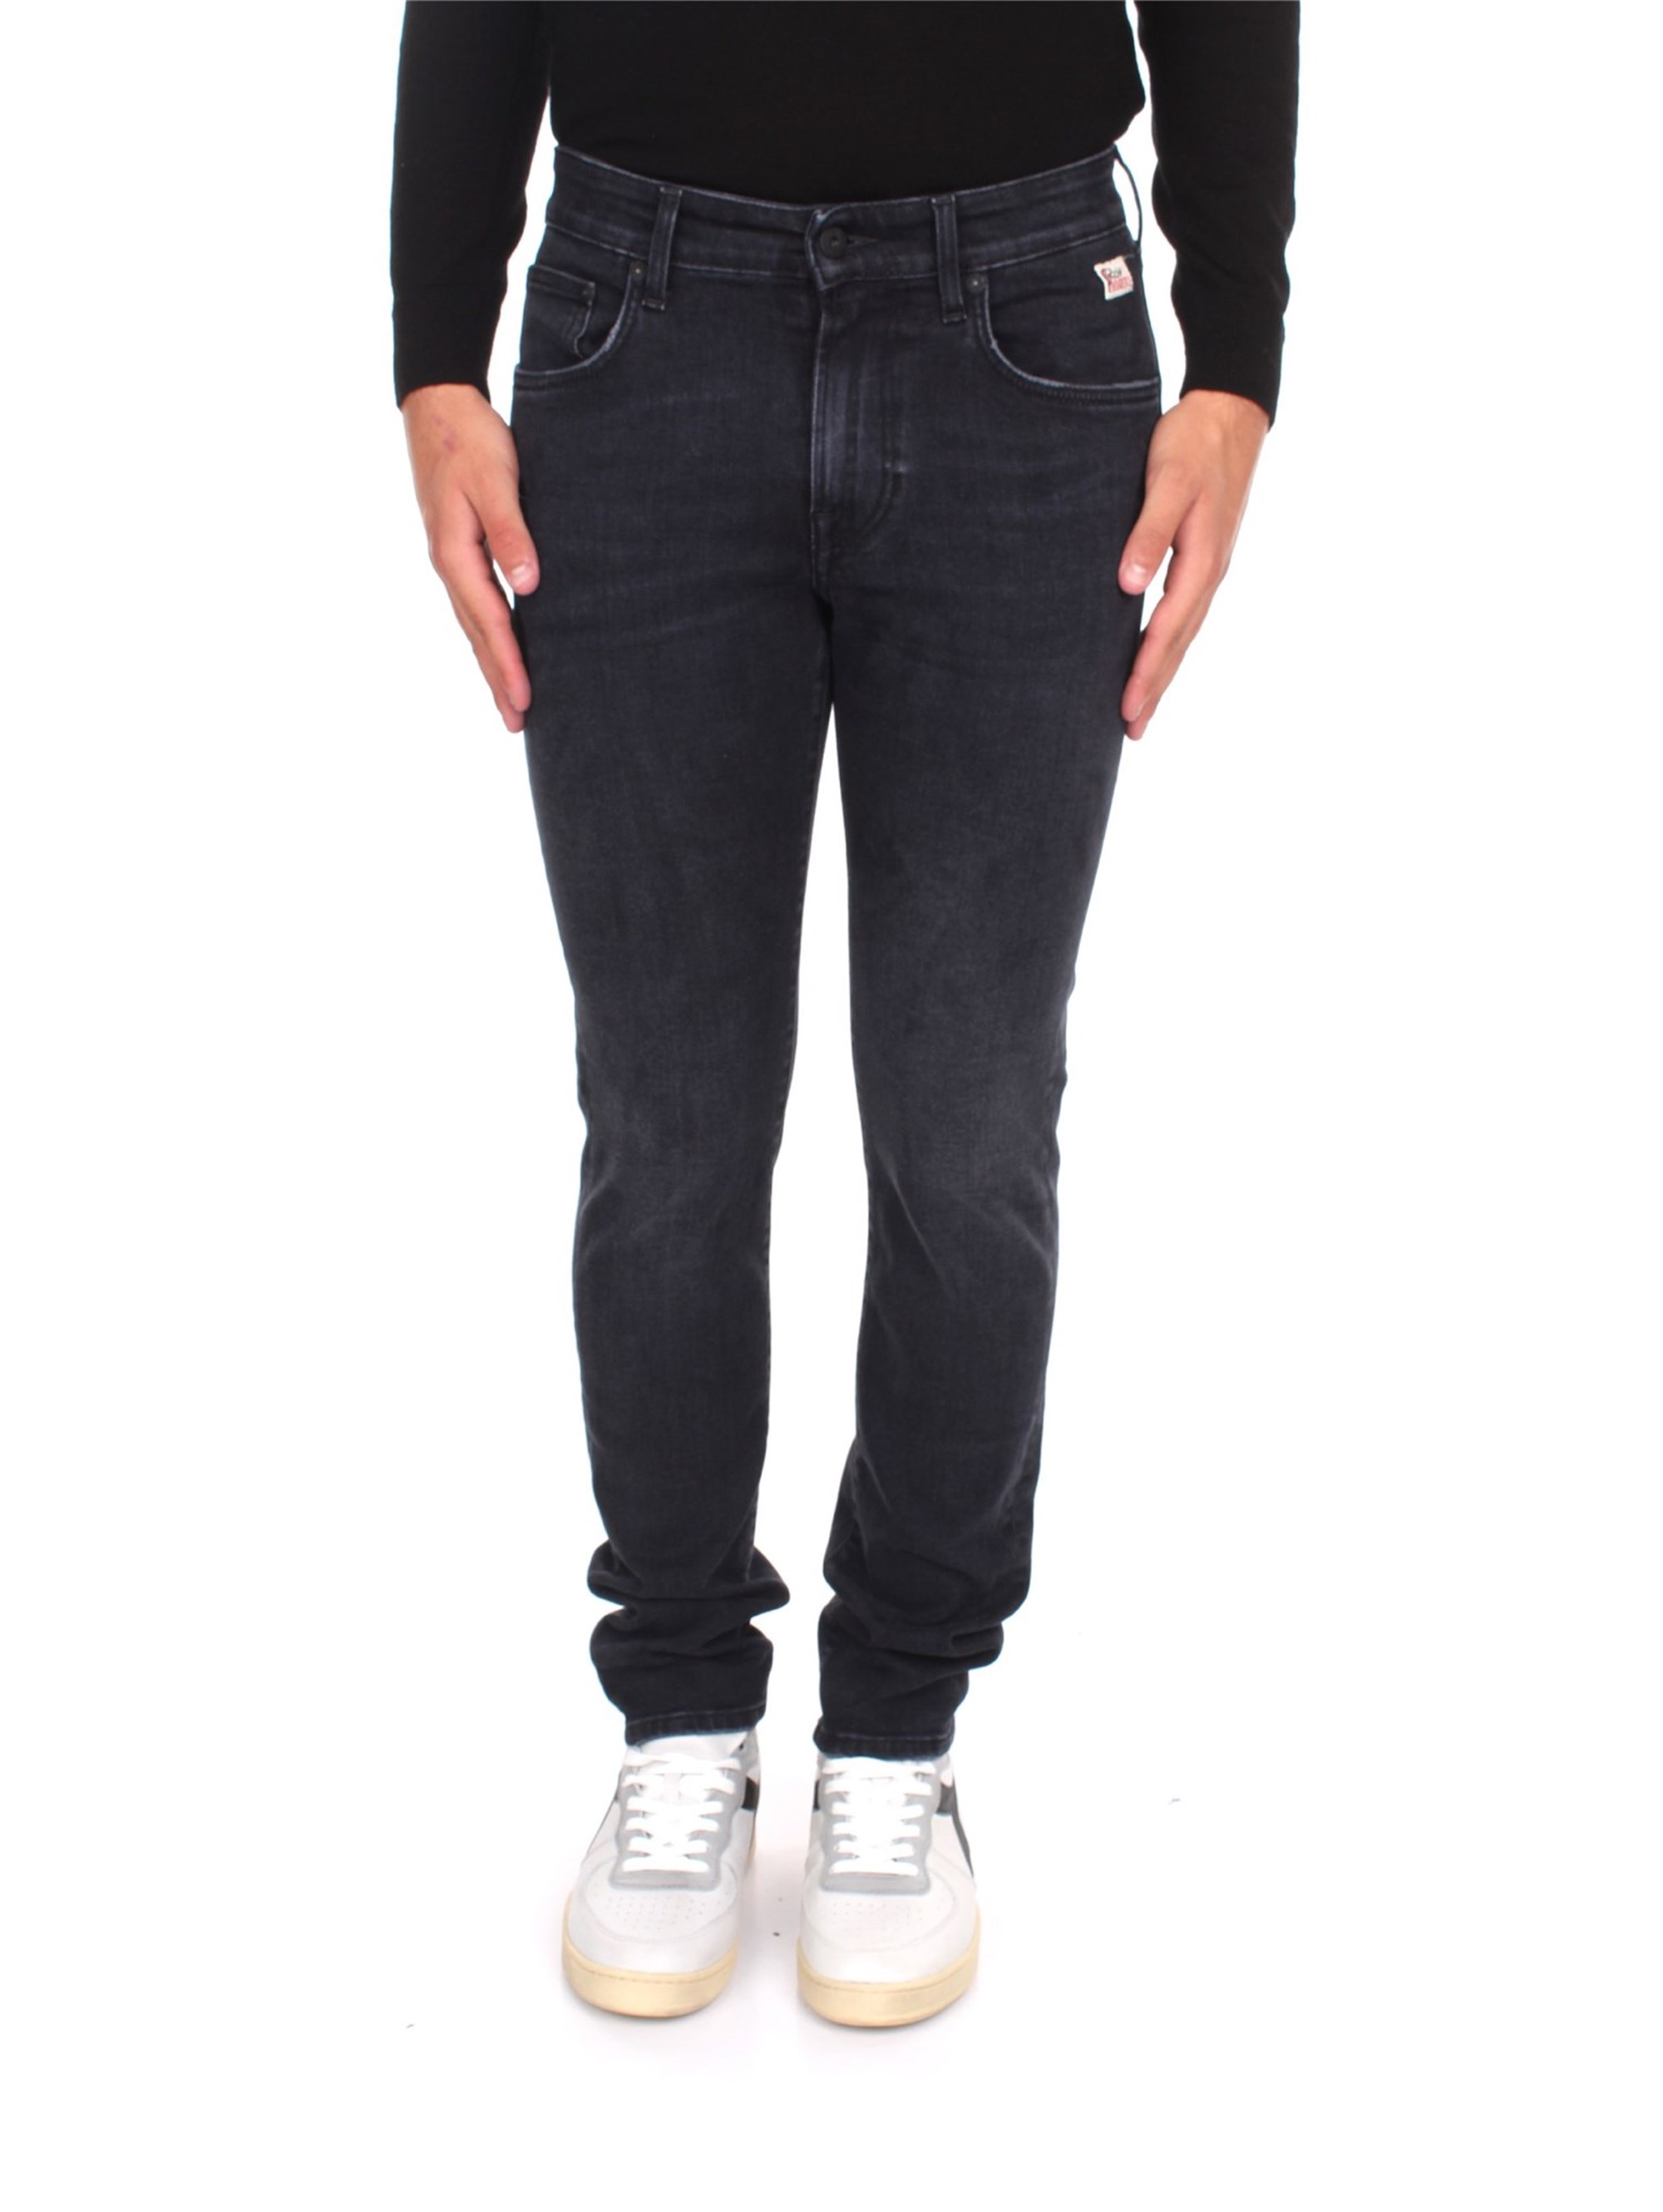 roy roger's Jeans Herren günstig online kaufen